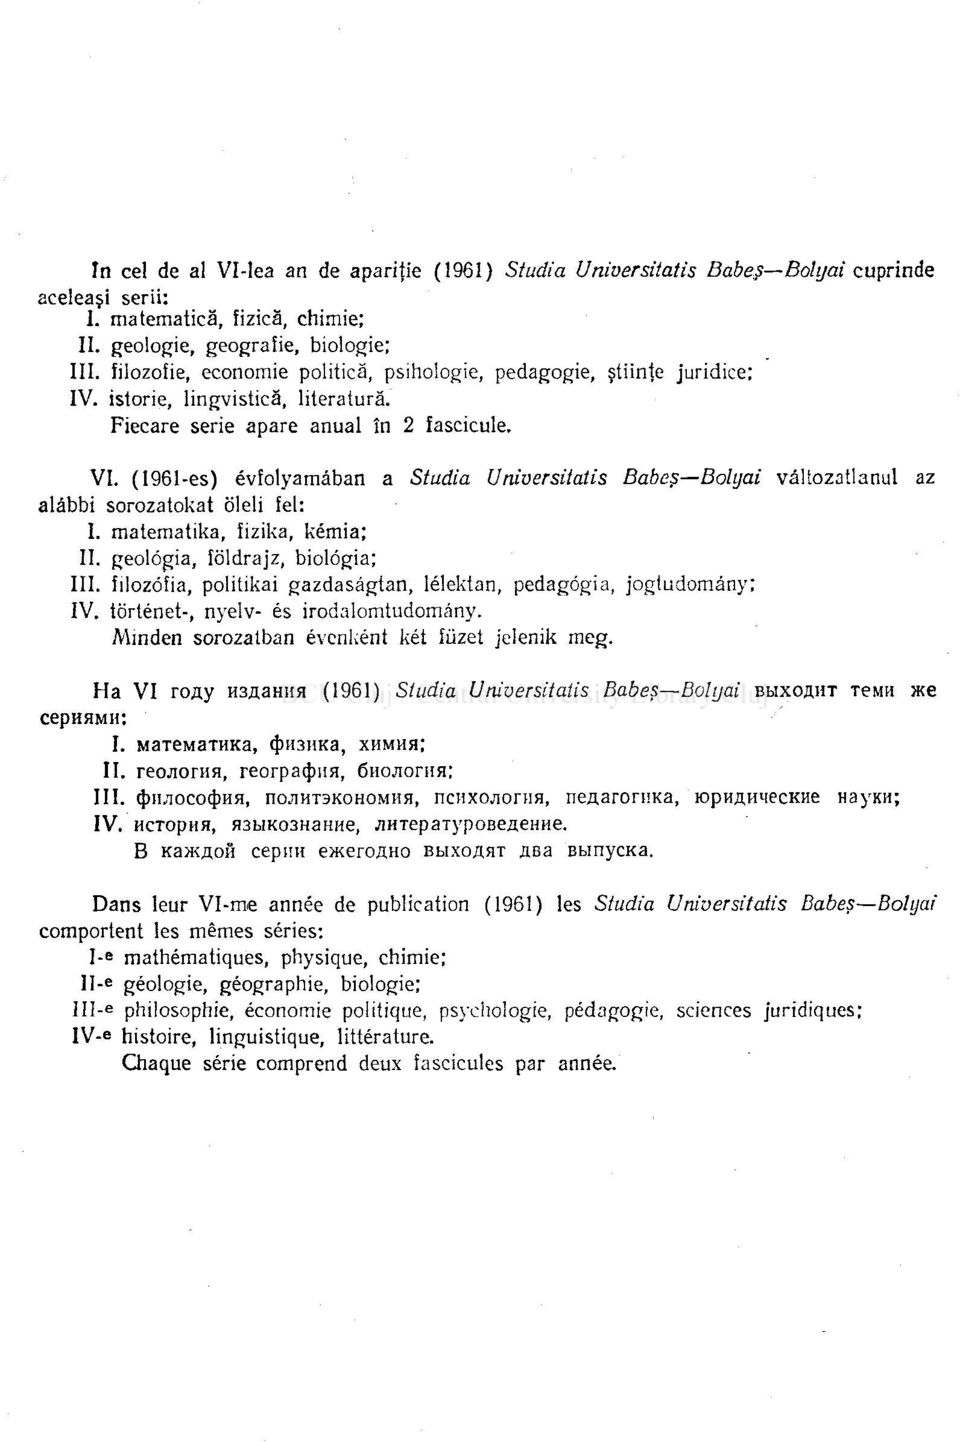 (1961-es) évfolyamâban a Studia Universitatis Babeş Bolyai vâltozatlanul az alâbbi sorozatokat oleli fel: I. matematika, fizika, kémia; II. geologia, îoldrajz, biologia; III.